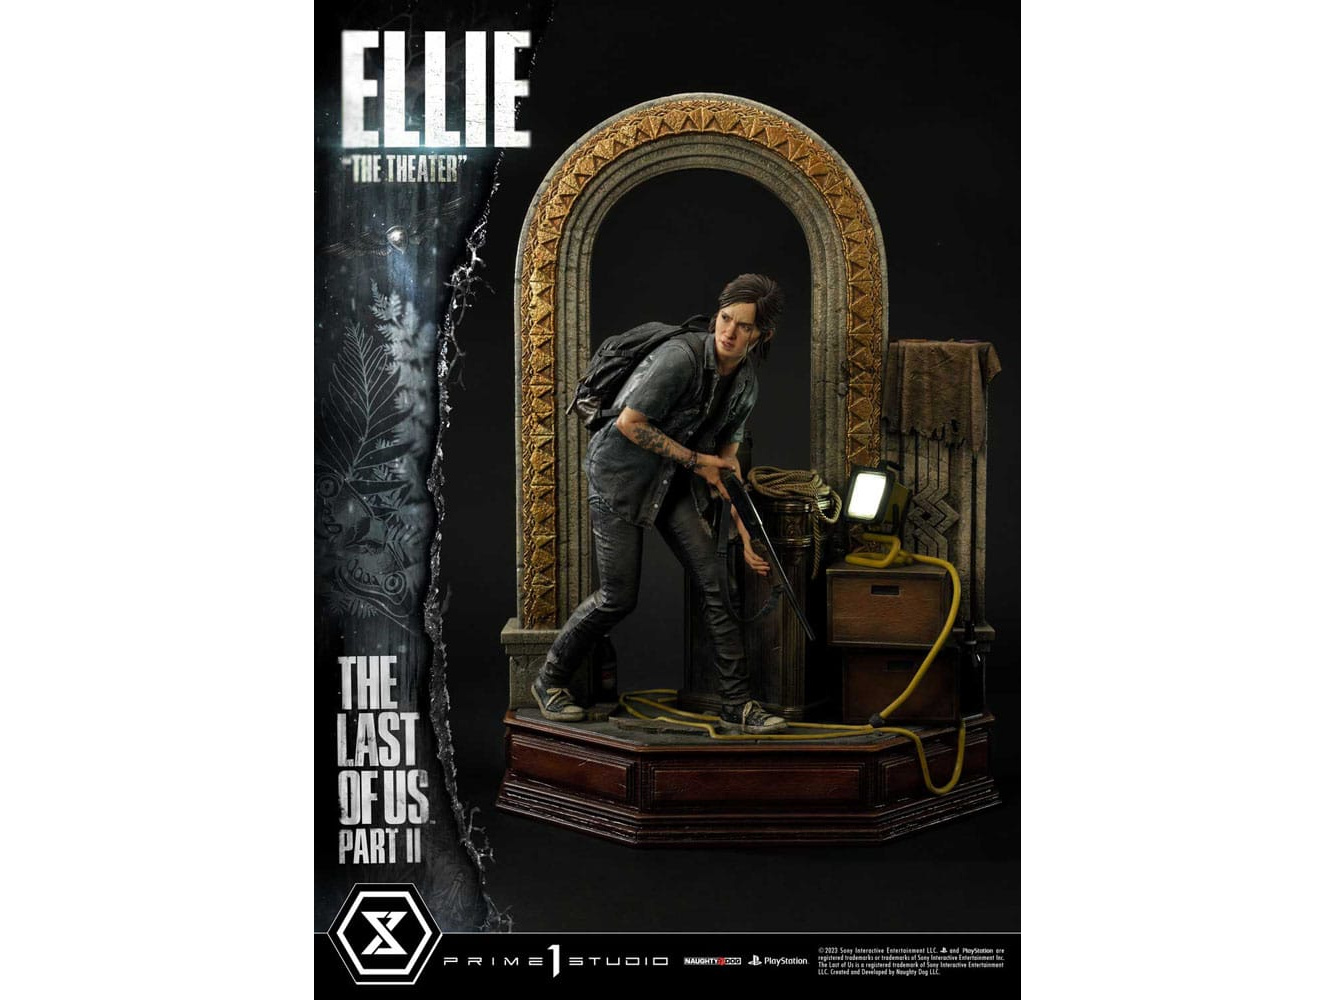 The Last of Us Part II Ultimate Premium Masterline Series Statue 1/4 Ellie "The Theater" Bonus Version 58 cm | 43057